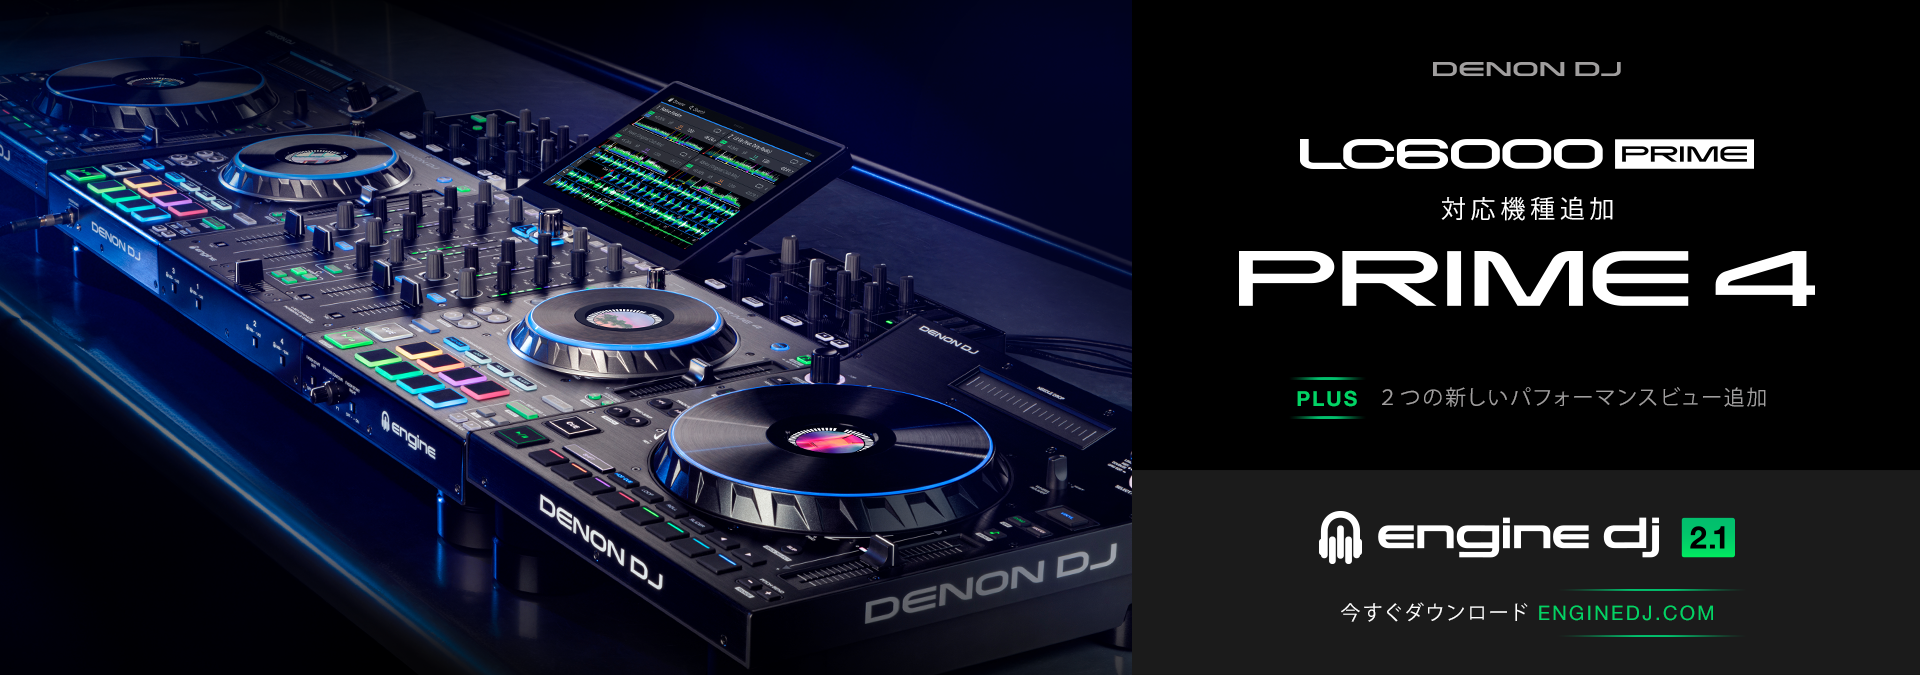 Denon DJ | Professional DJ Equipment